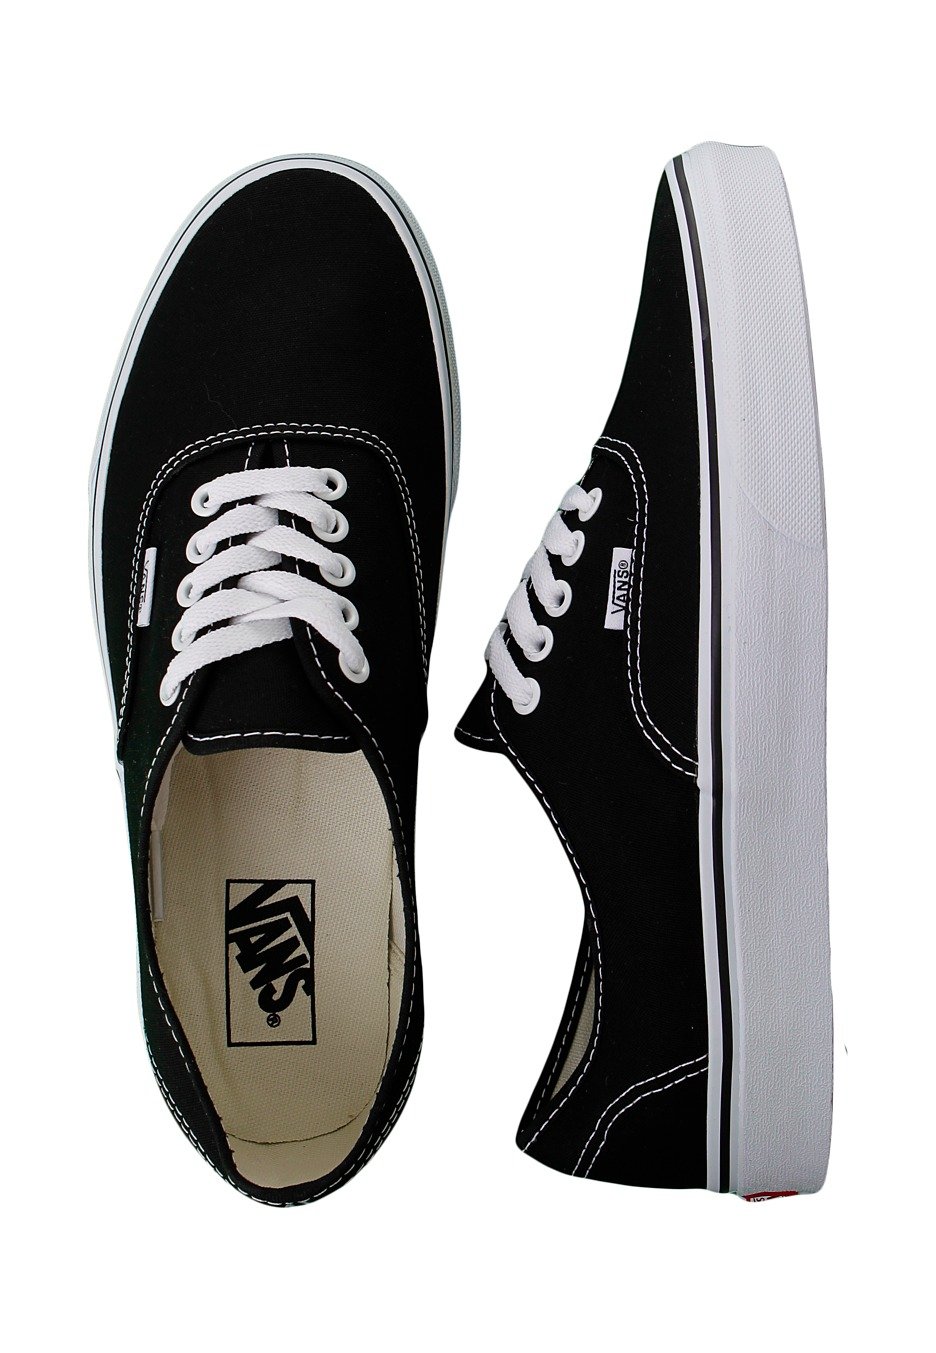 Vans - Authentic Black/White - Shoes